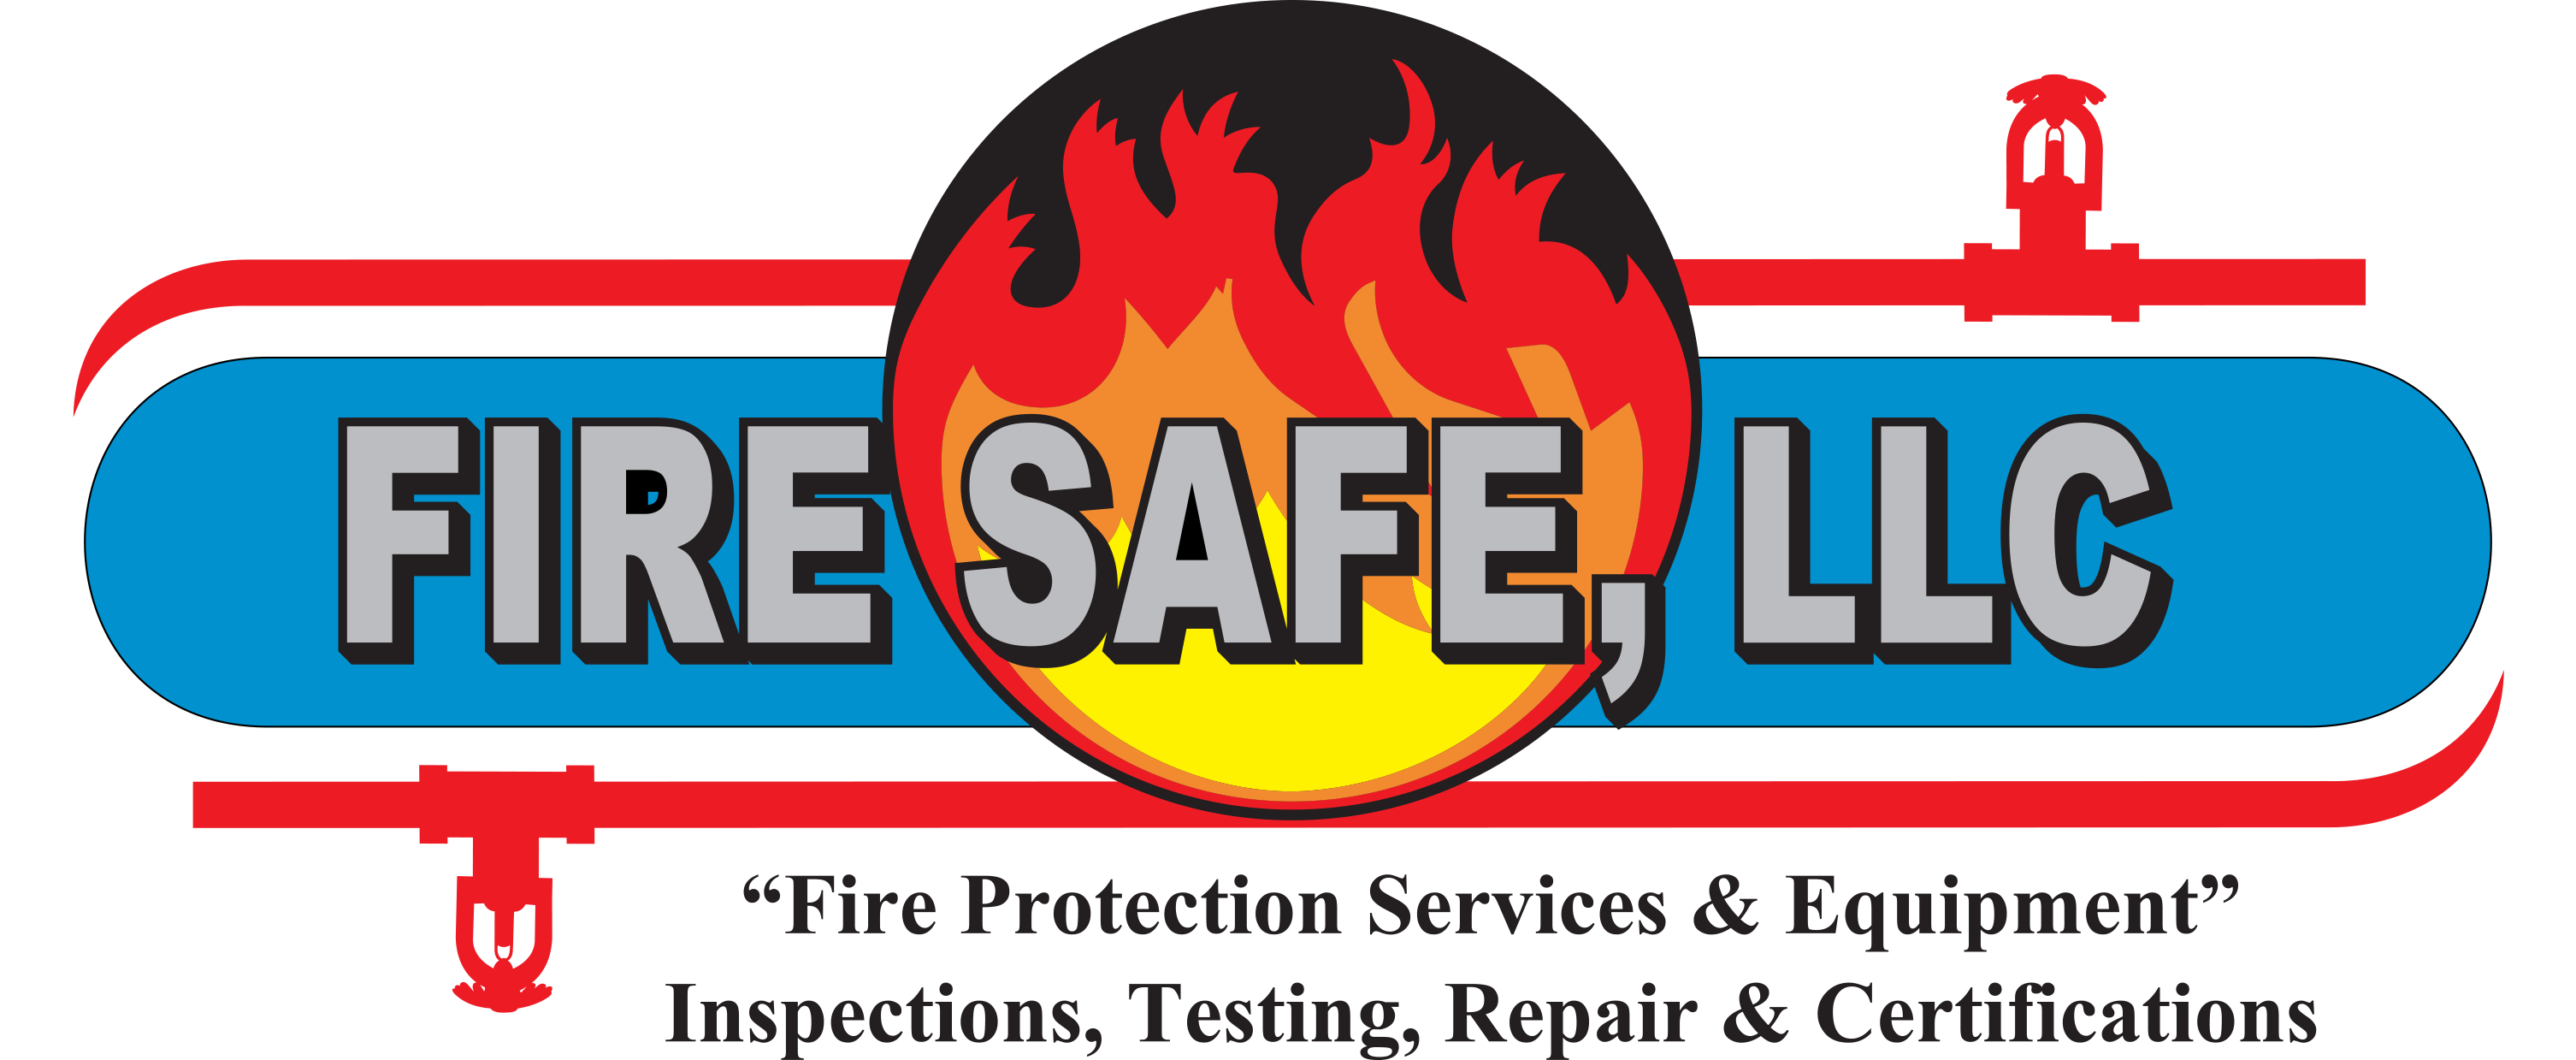 fire safe logo new